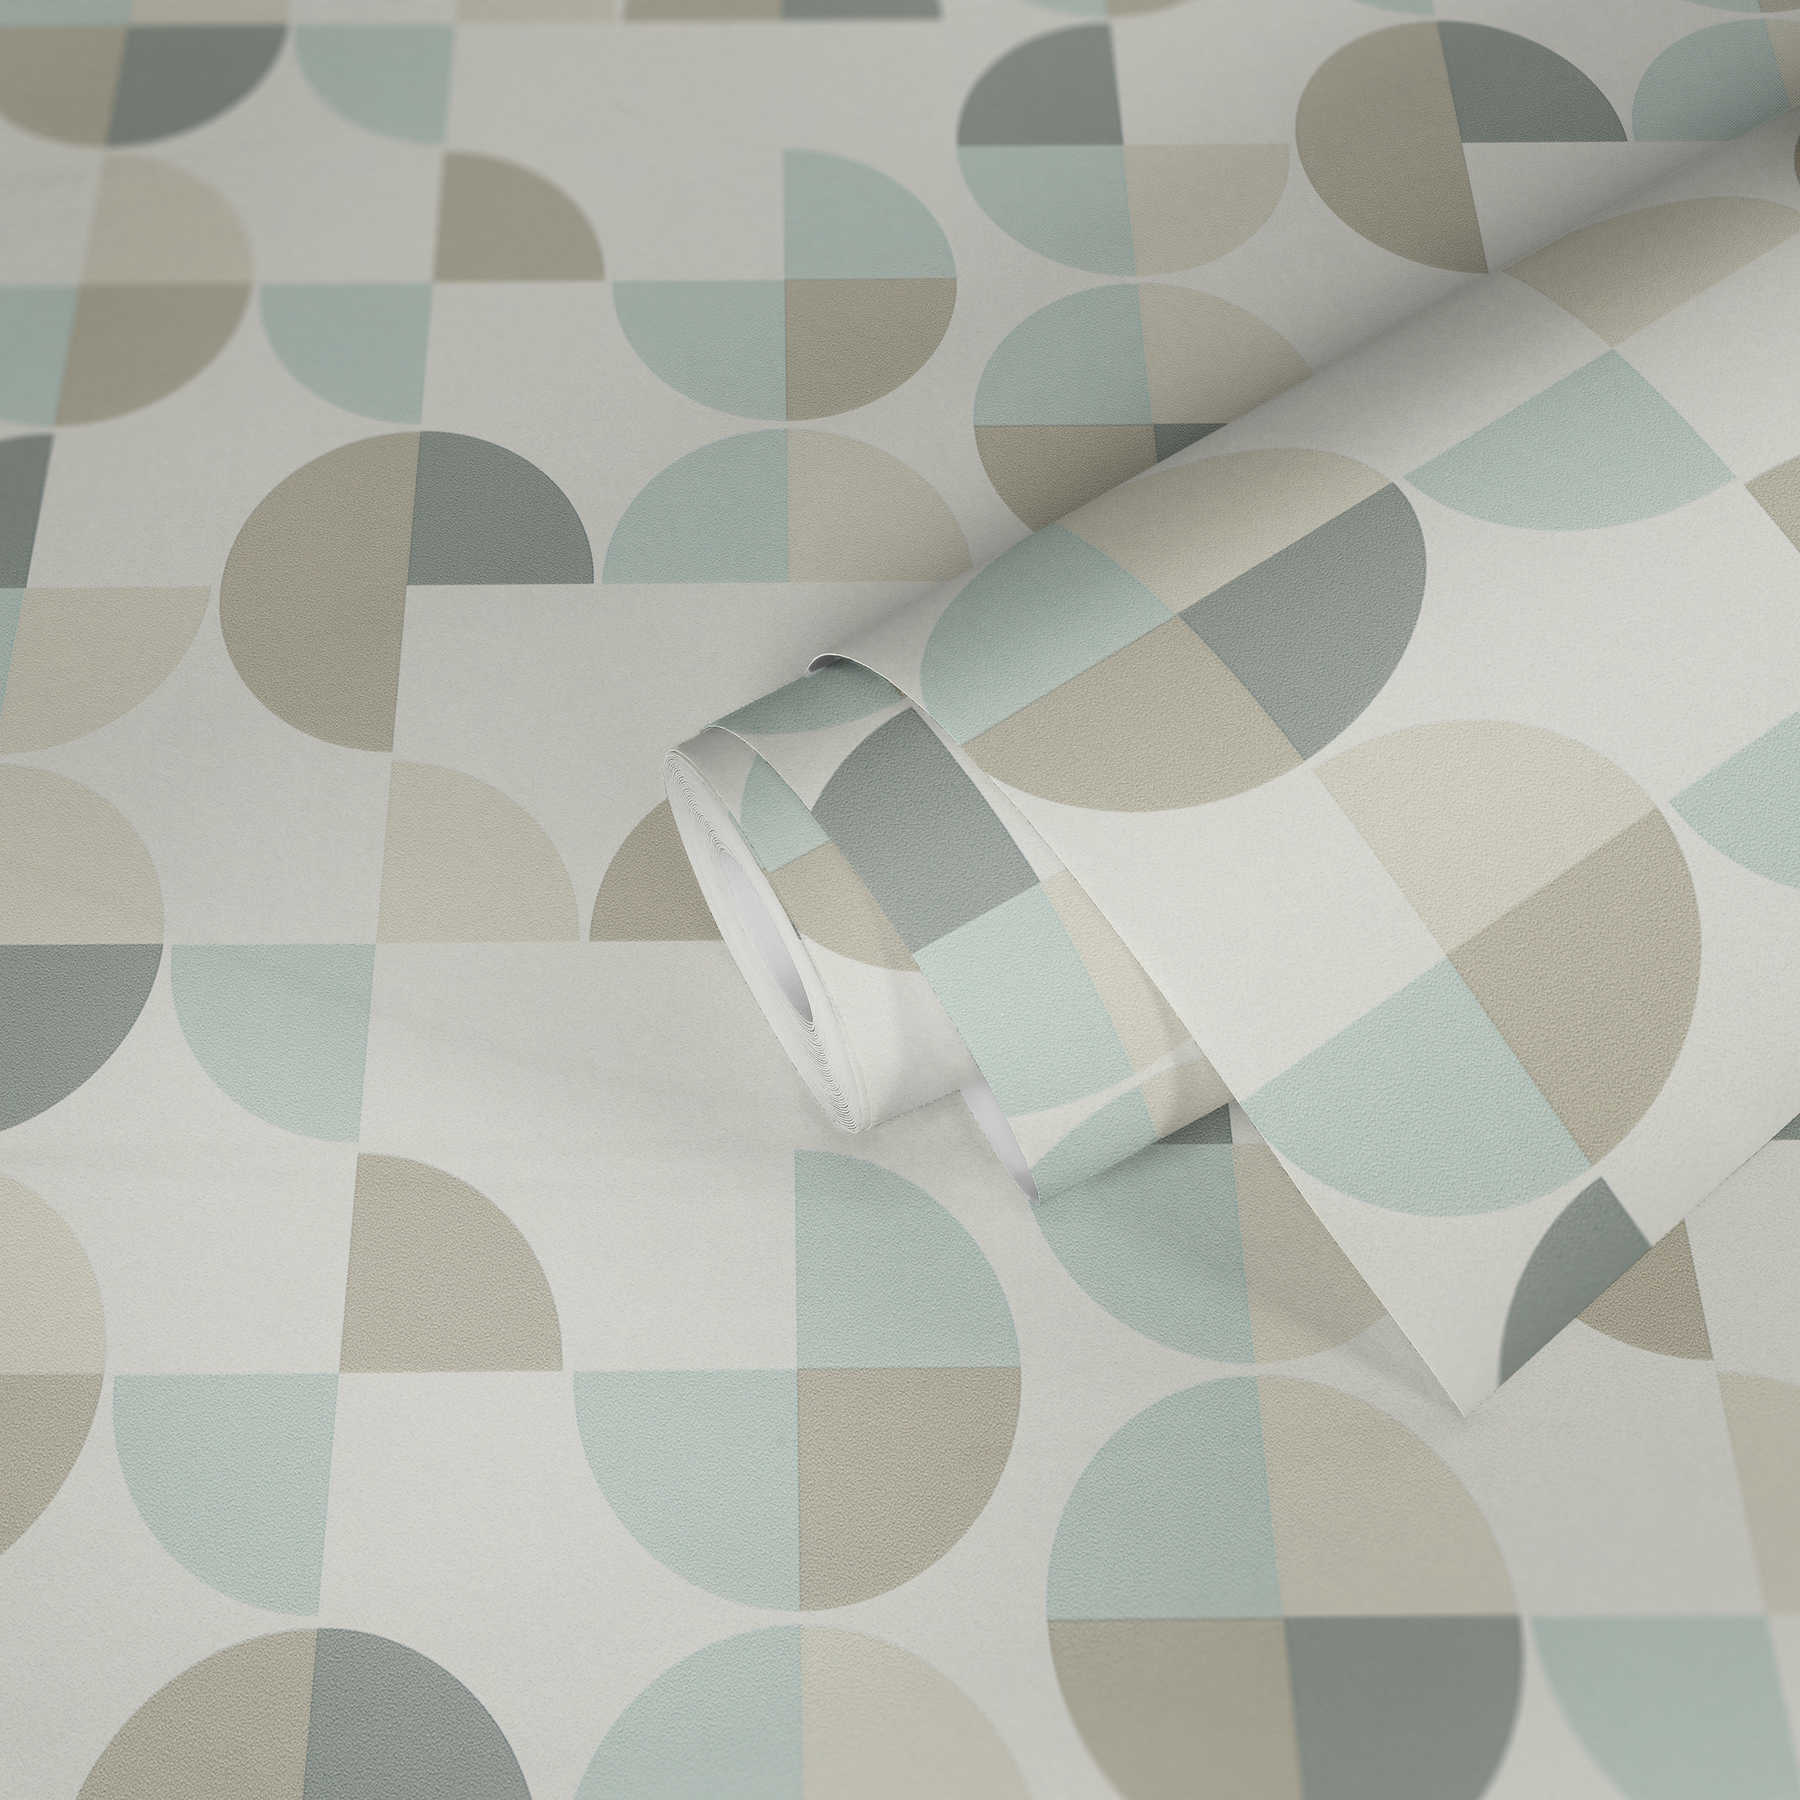             Papier peint à motifs géométriques style scandinave - bleu, gris, beige
        